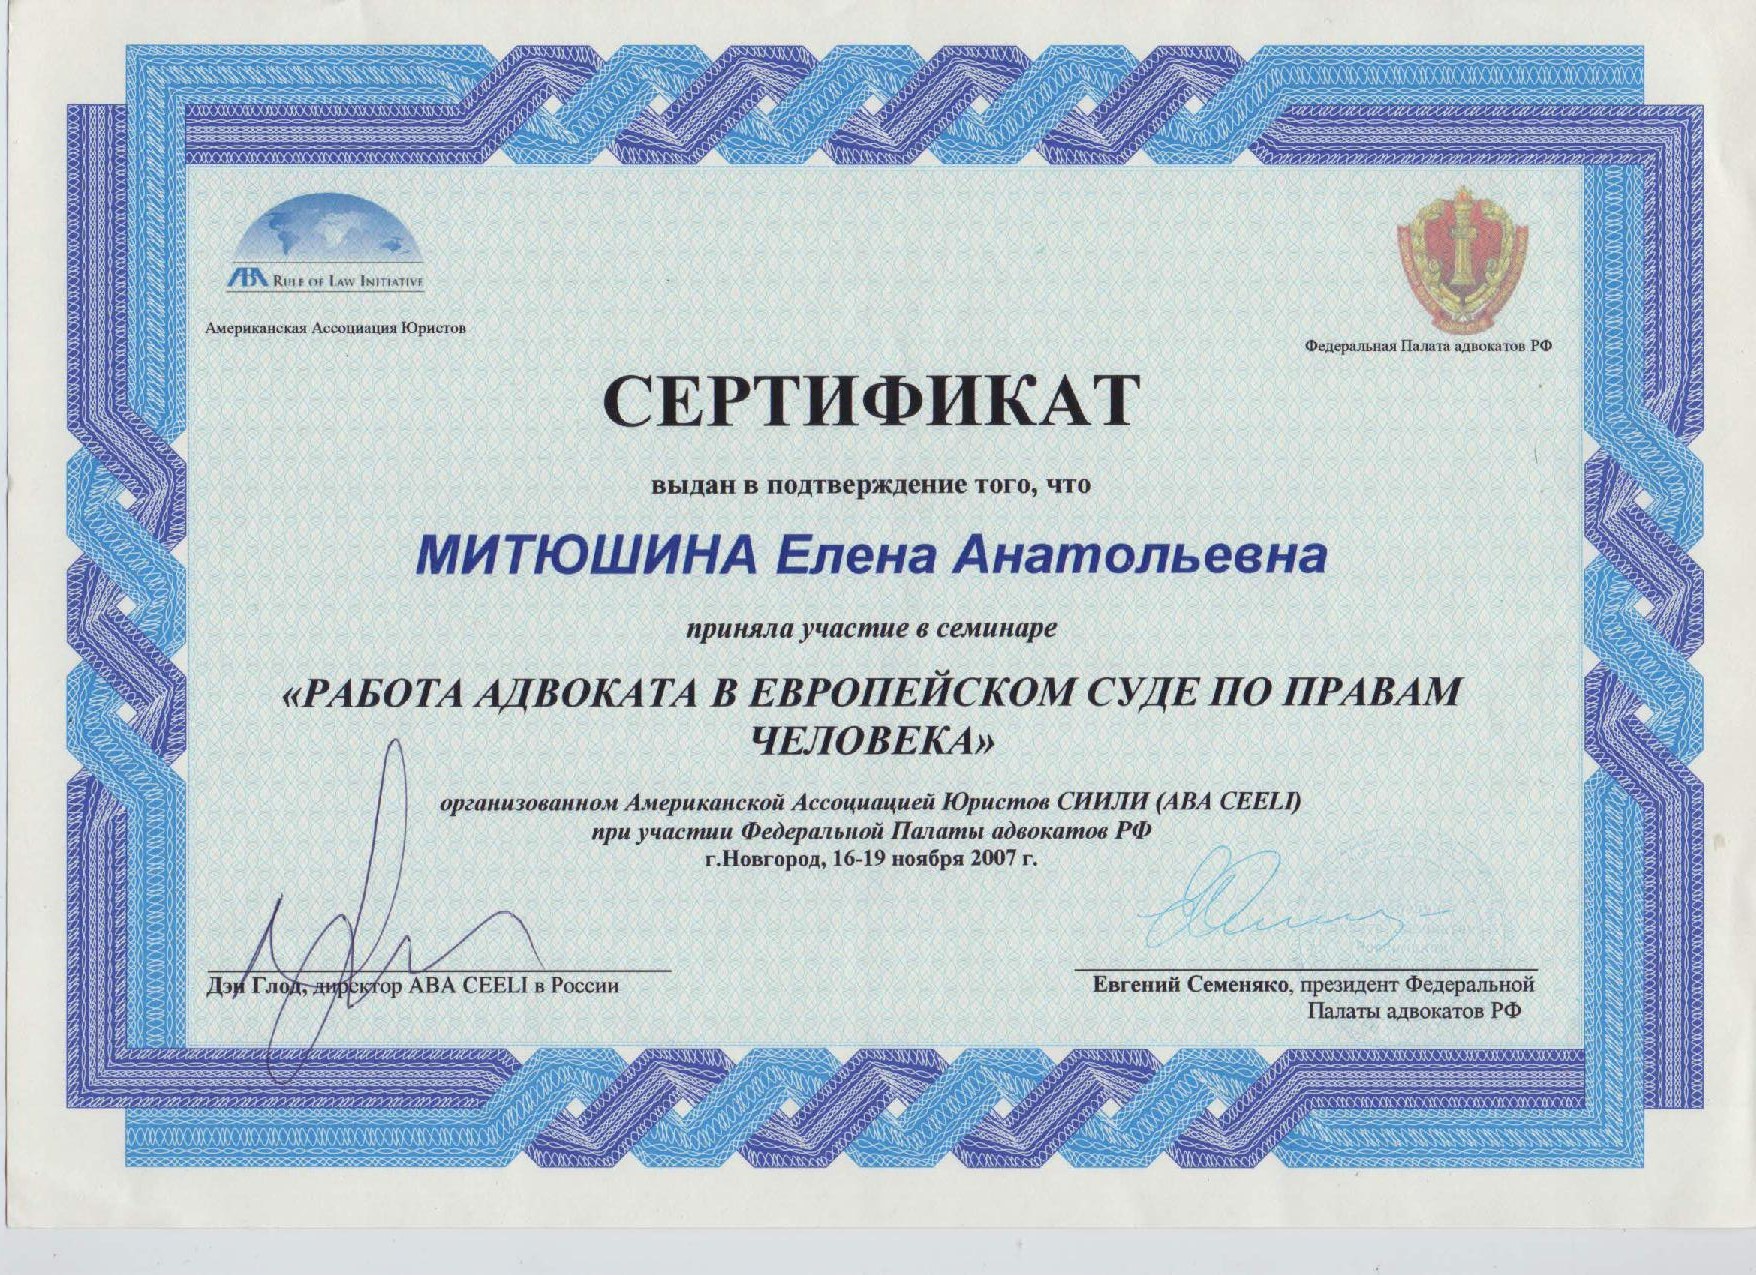 Сертификат "Работа адвоката в Европейском суде по правам человека"